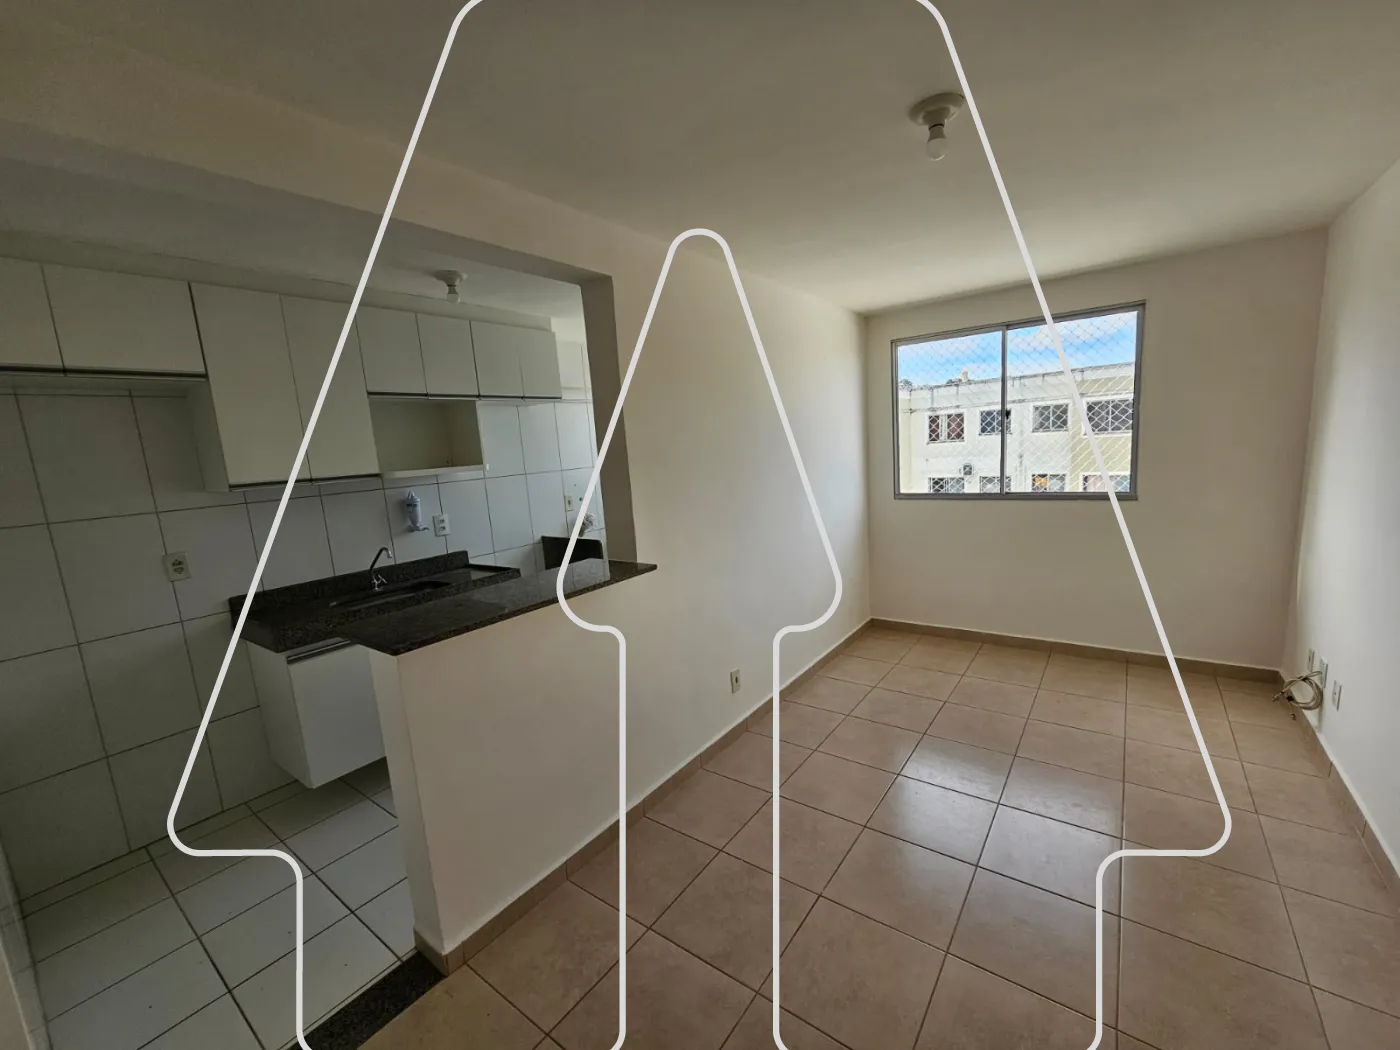 Alugar Apartamento / Padrão em Araçatuba R$ 900,00 - Foto 2